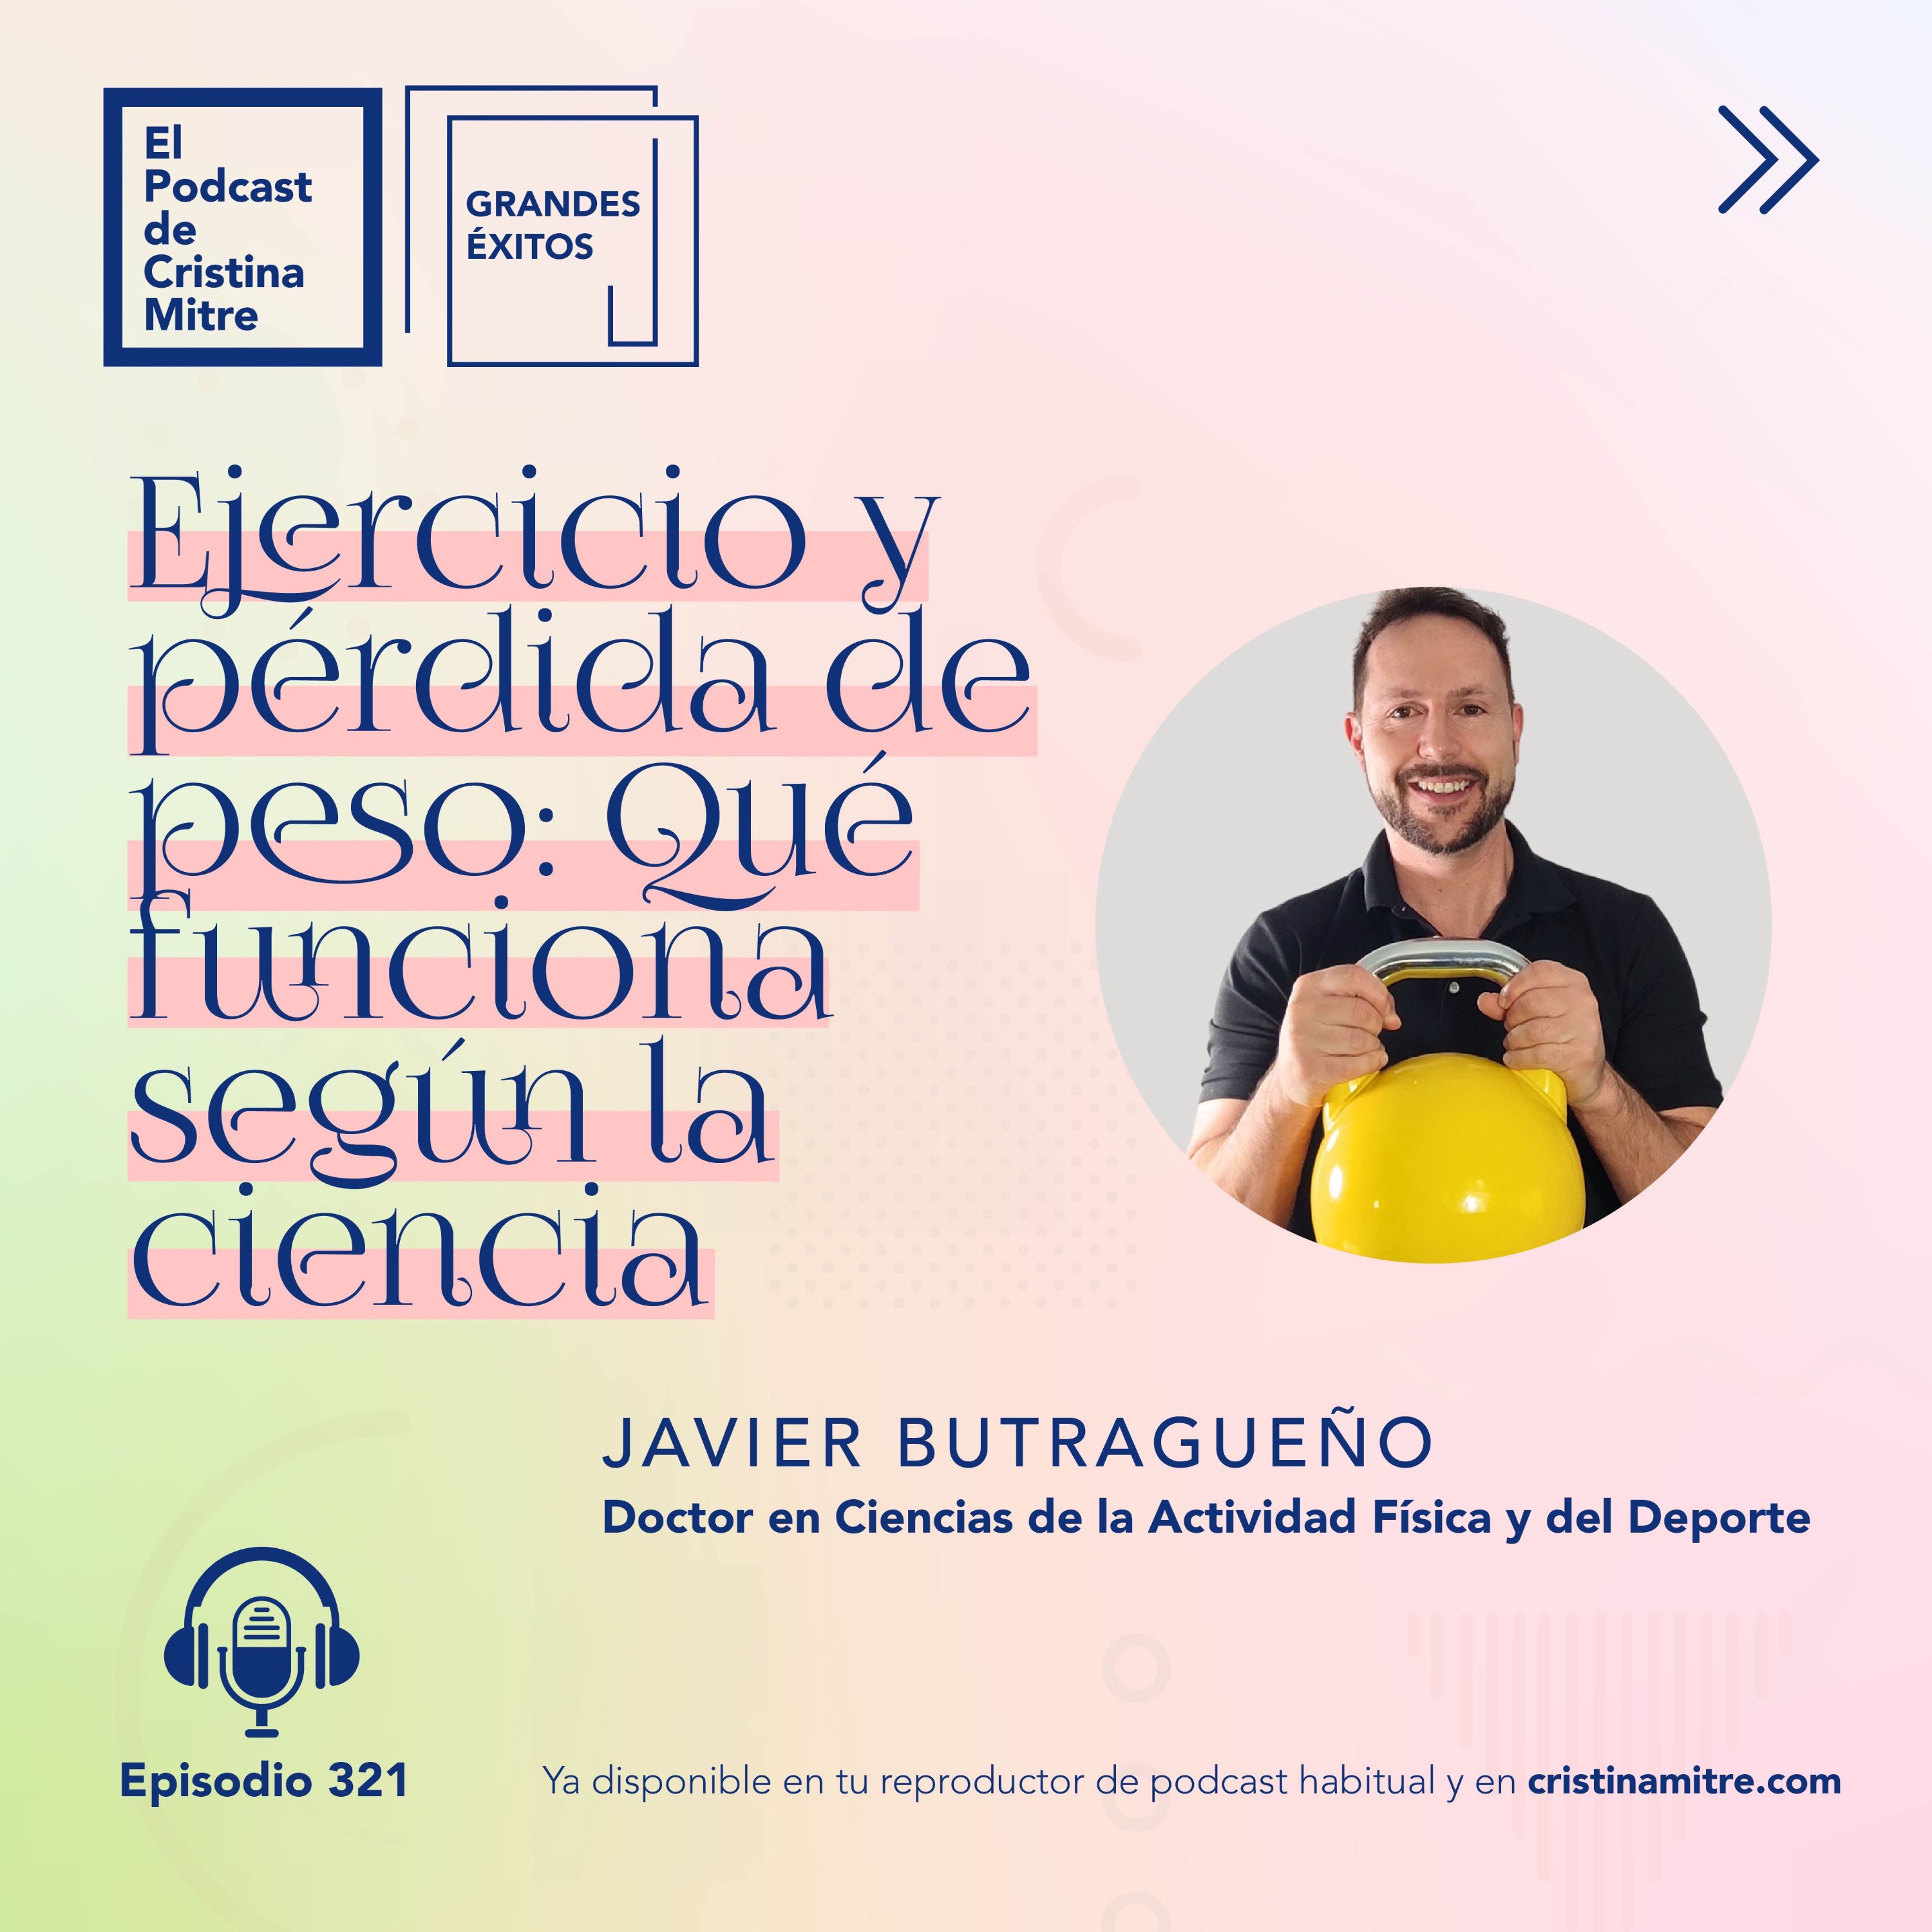 Ejercicio y pérdida de peso: Qué funciona según la ciencia, con Javier Butragueño. Episodio 321